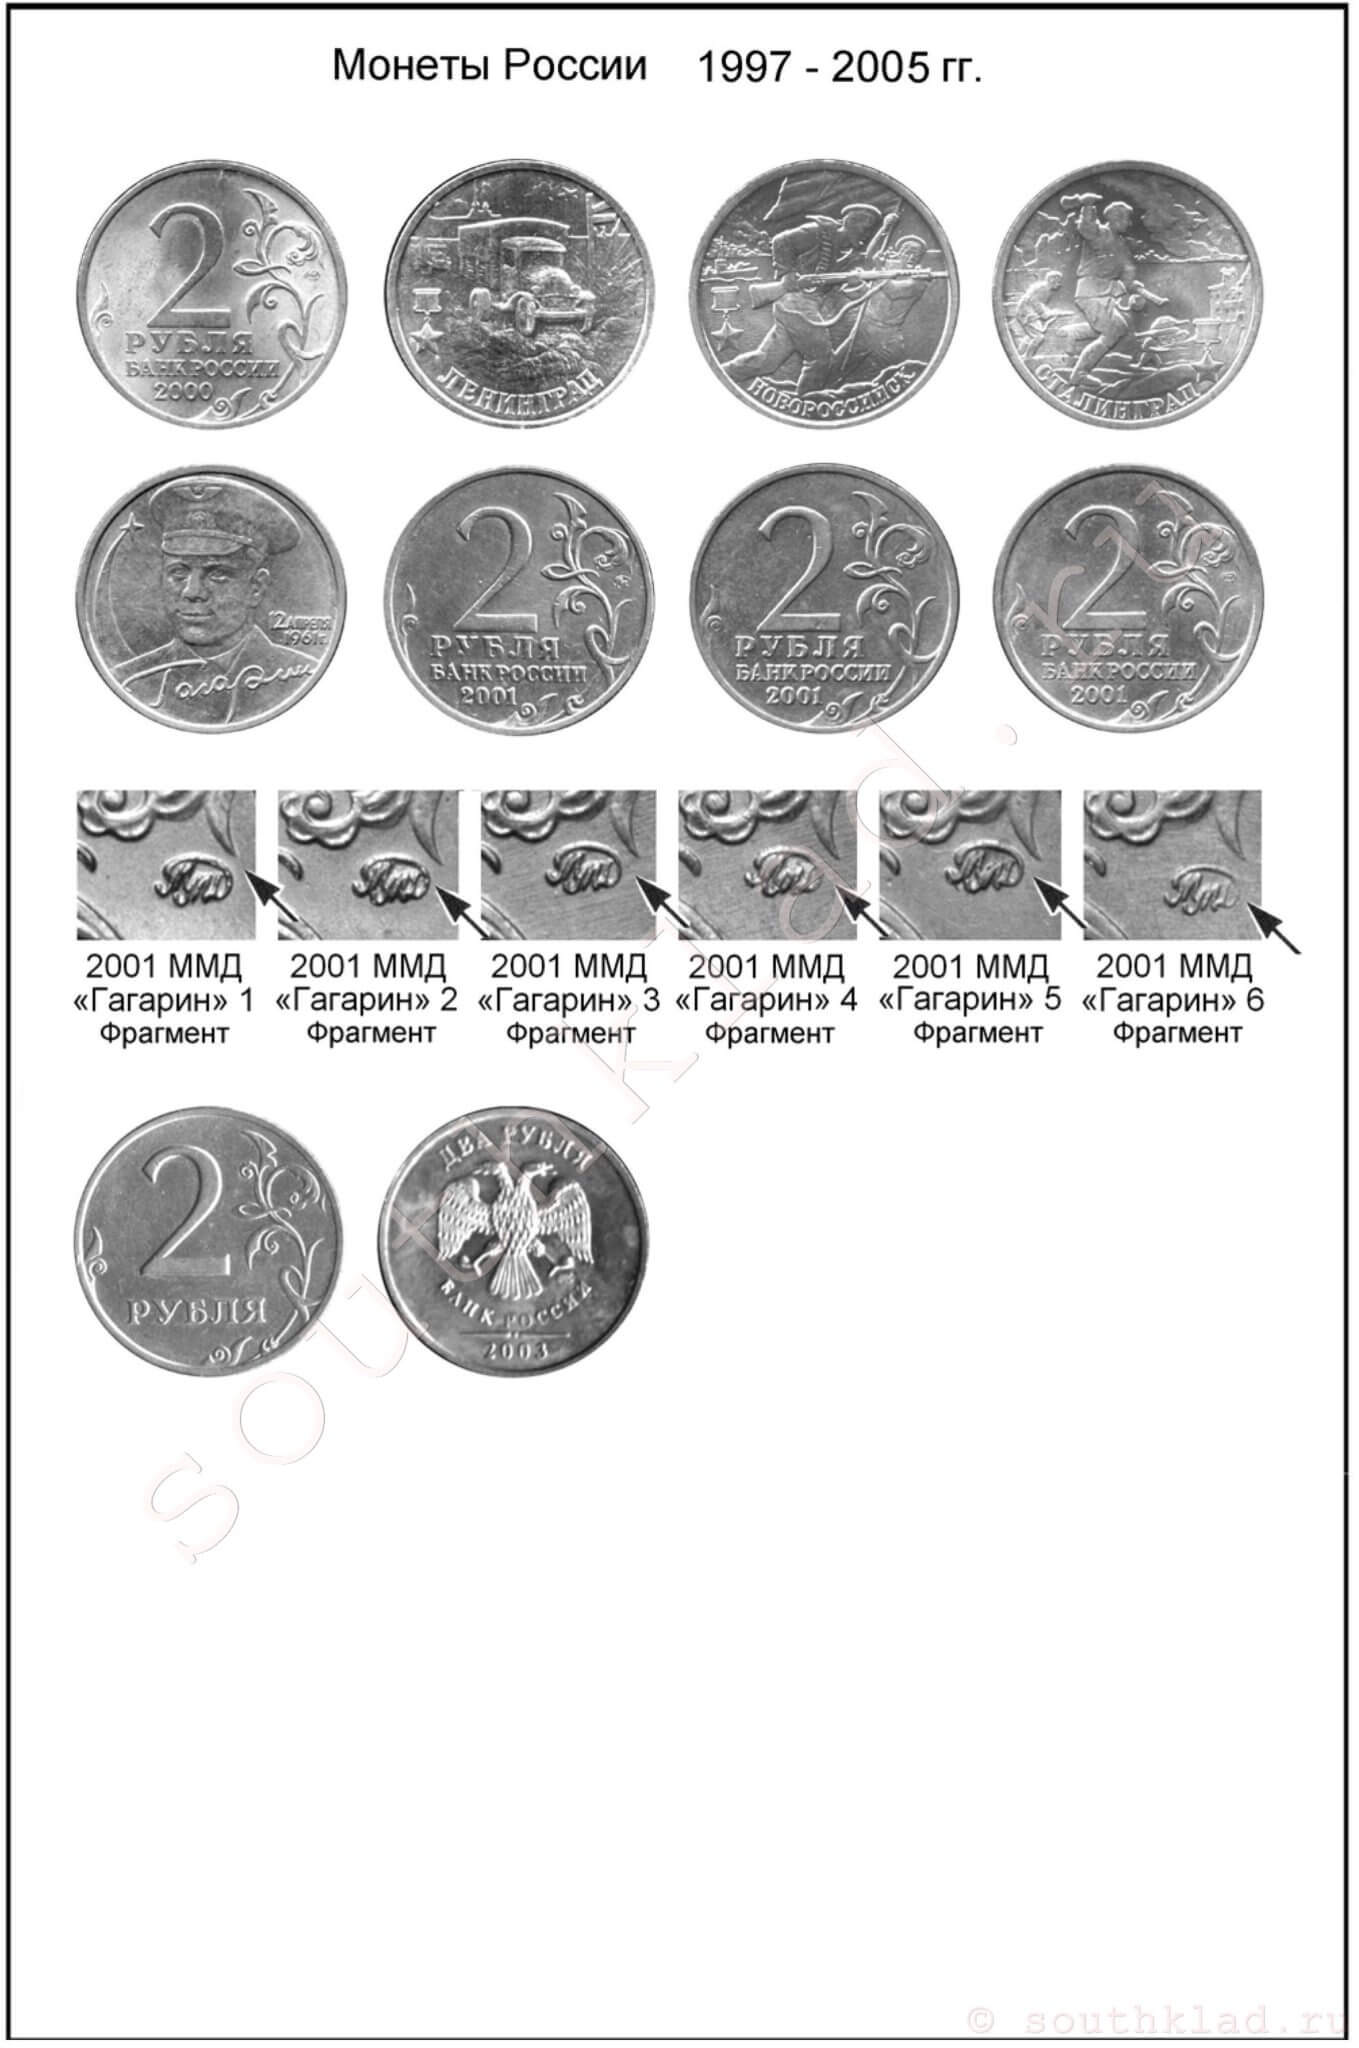 2 рубля. Монеты России образца 1997 года